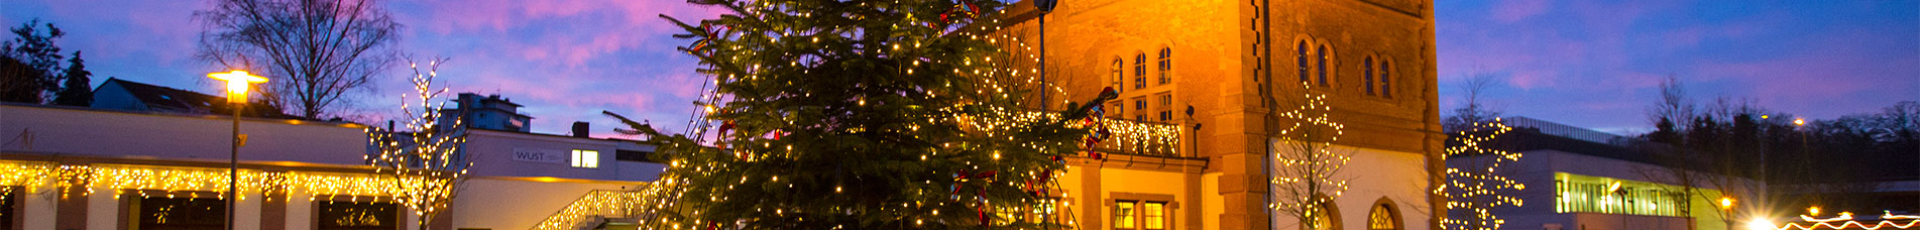 Brauhaus an der Gartenschau, weihnachtlich geschmückt